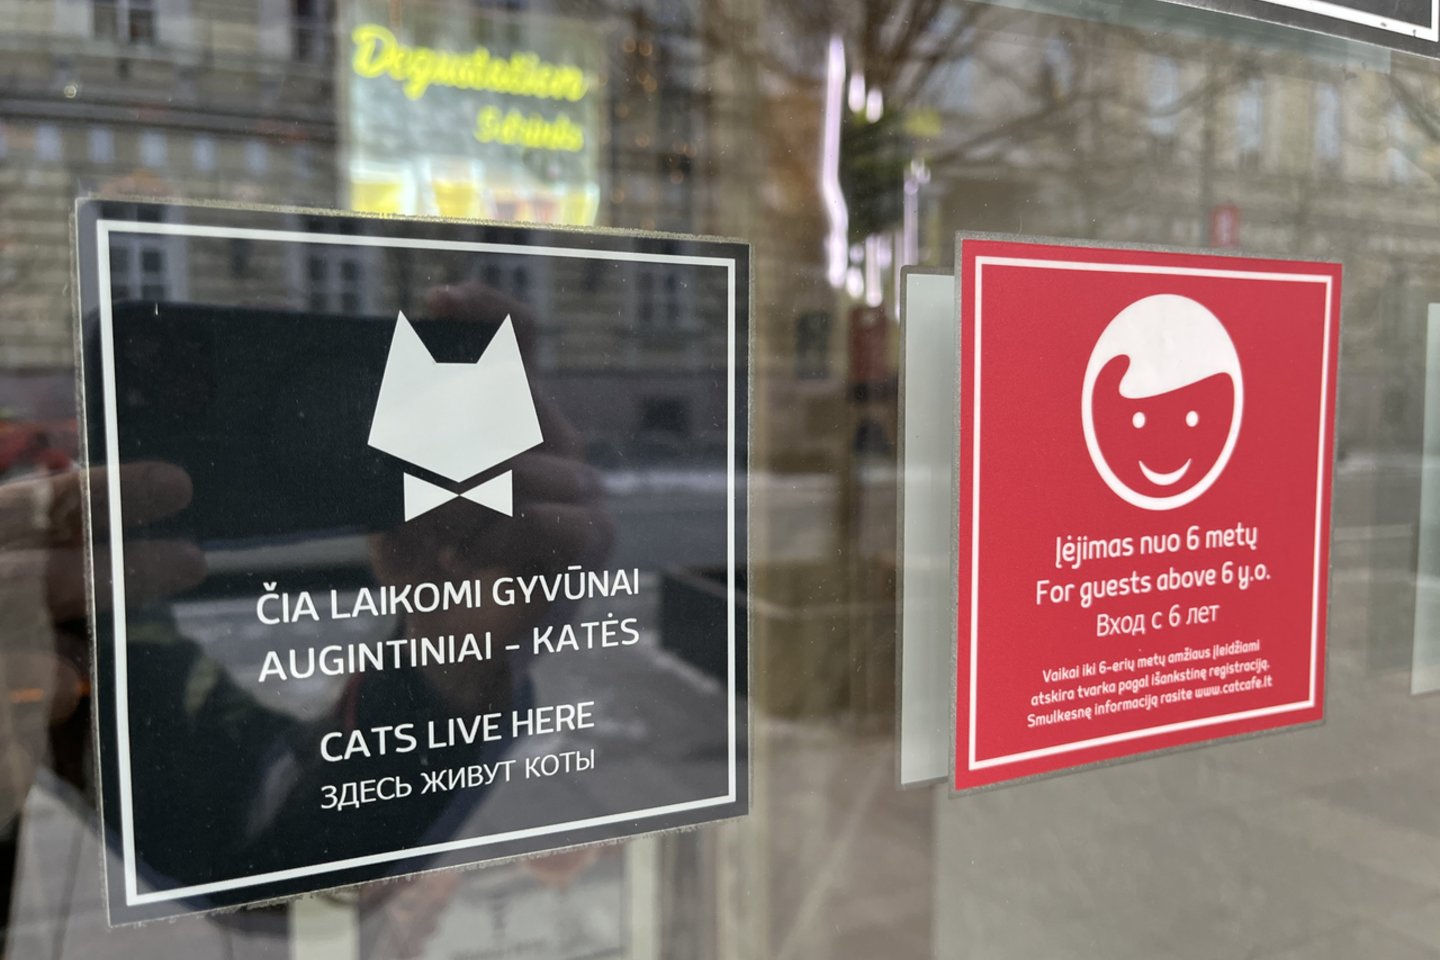  Kačių kavinės atstovai primena apie galiojančias taisykles.<br> Kačių kavinės atstovų nuotr.